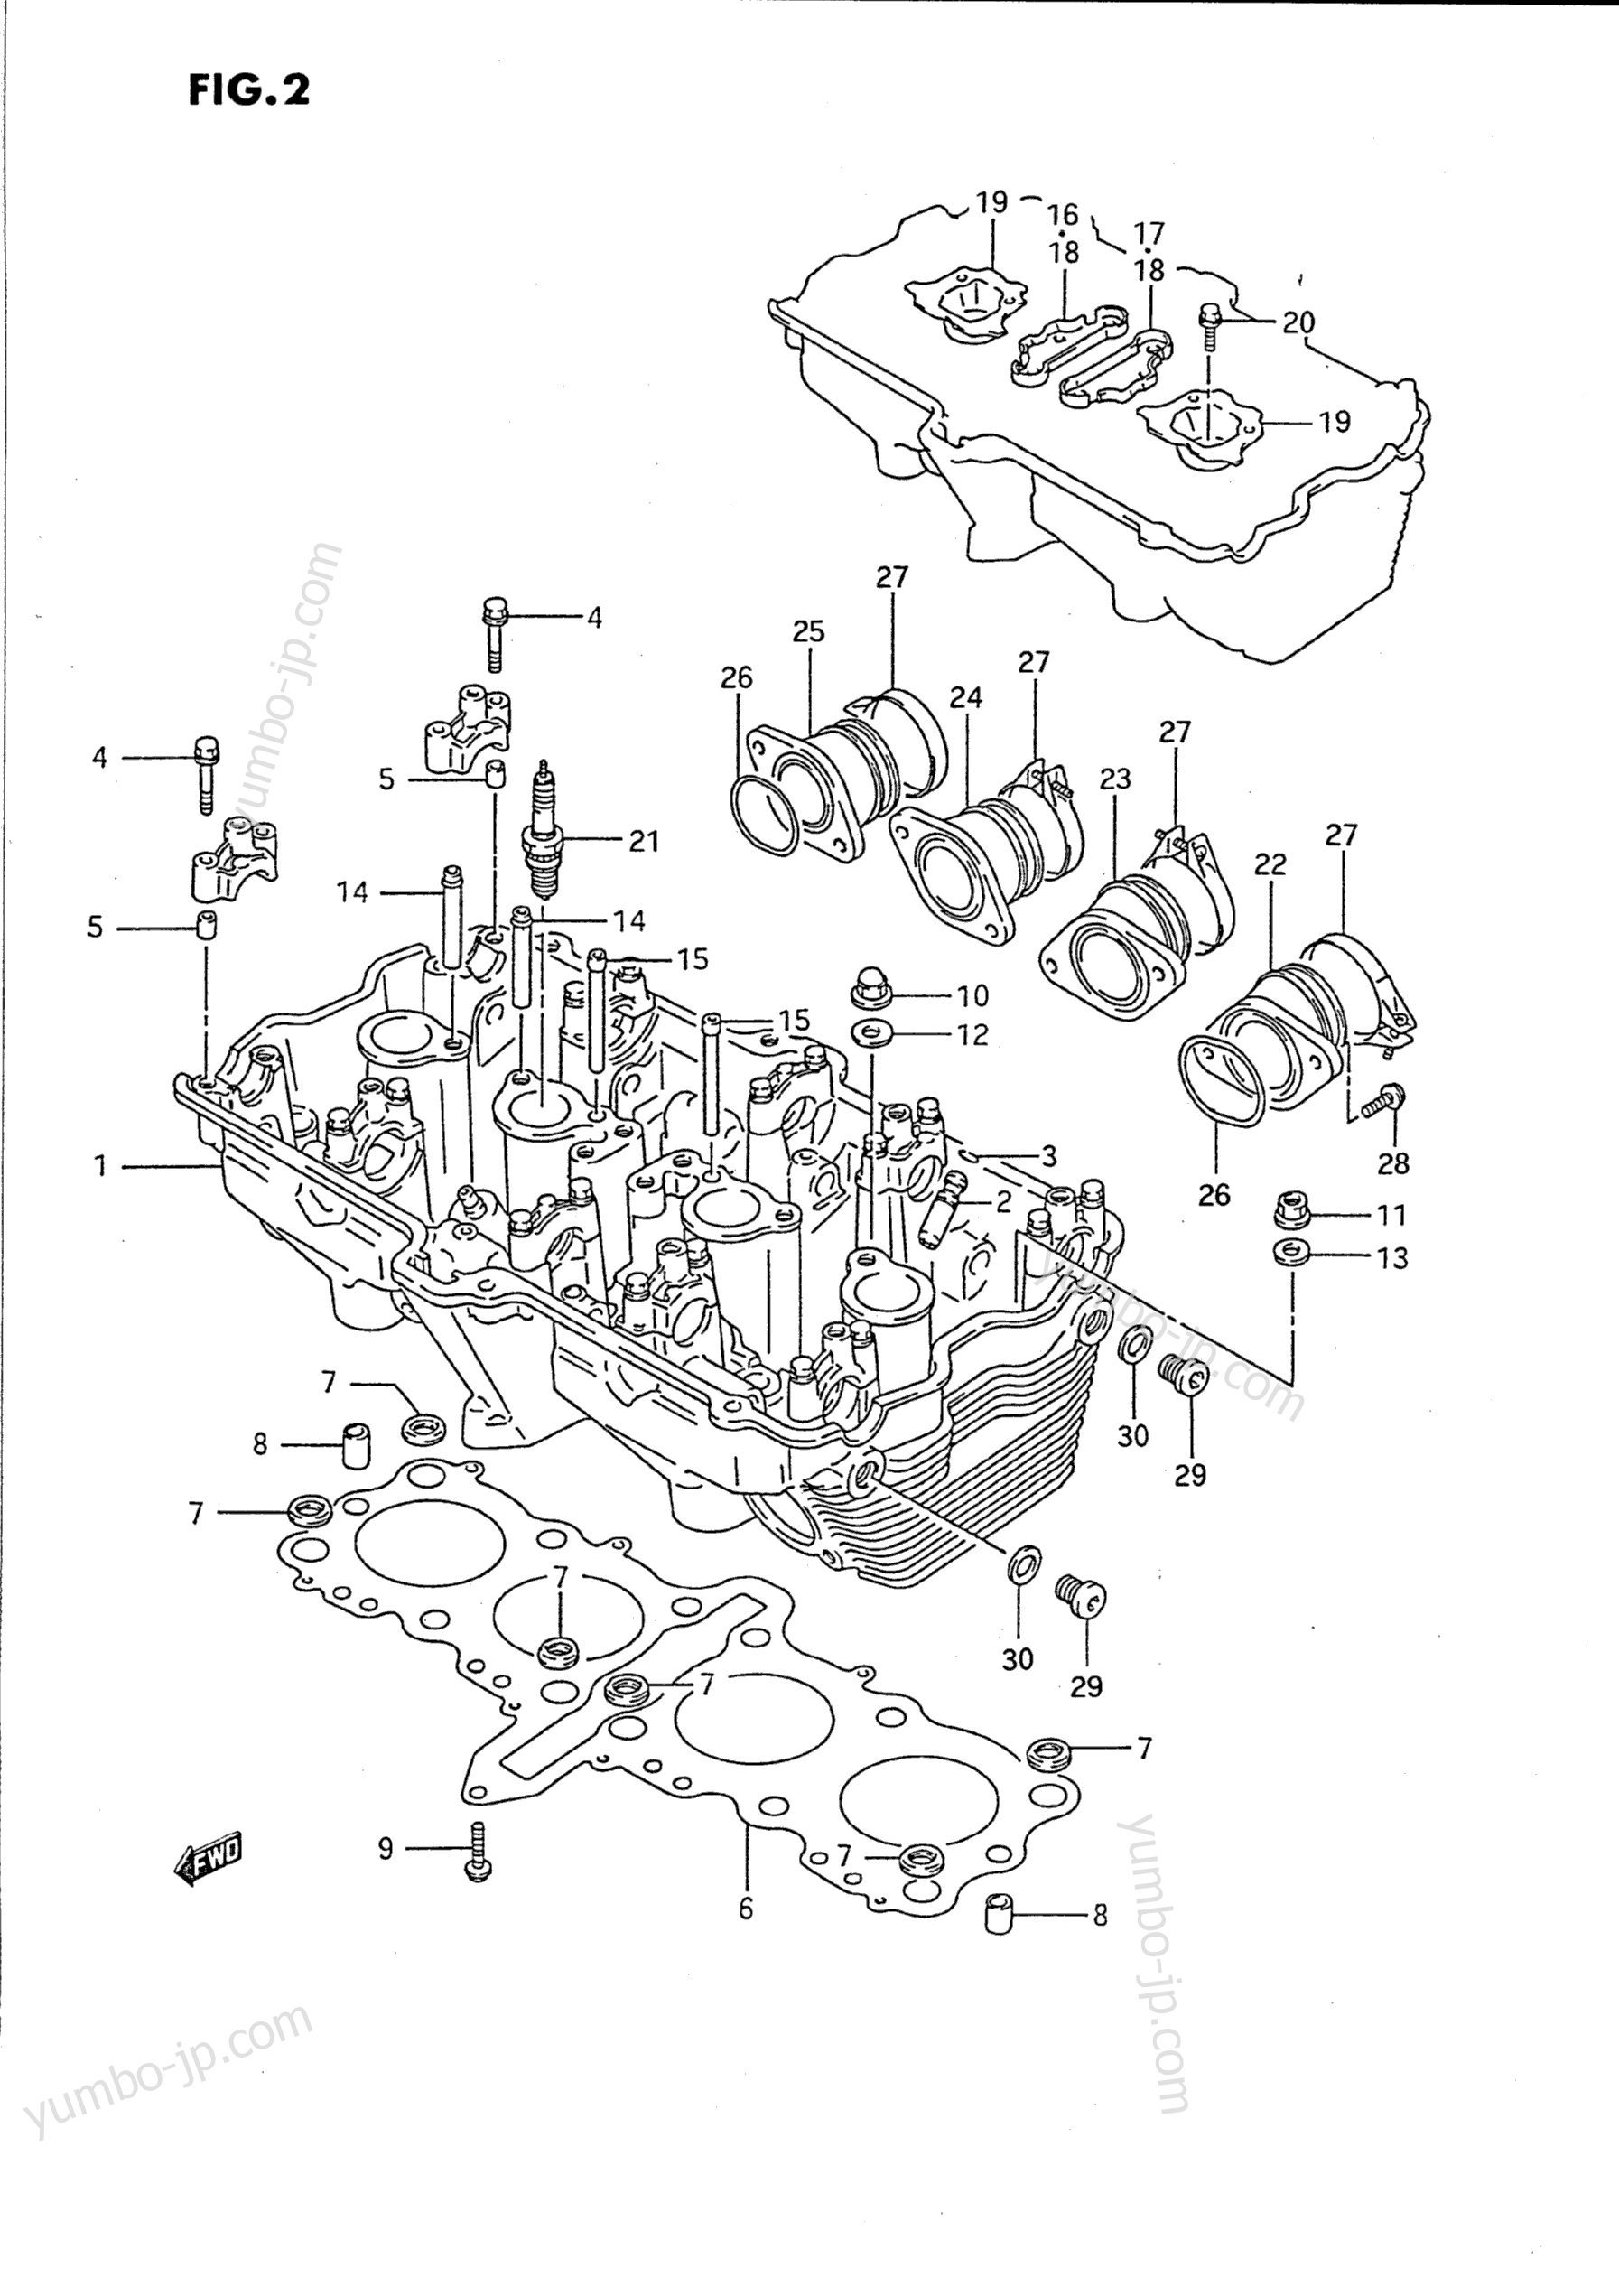 Головка блока цилиндров для мотоциклов SUZUKI Katana (GSX750F) 1993 г.